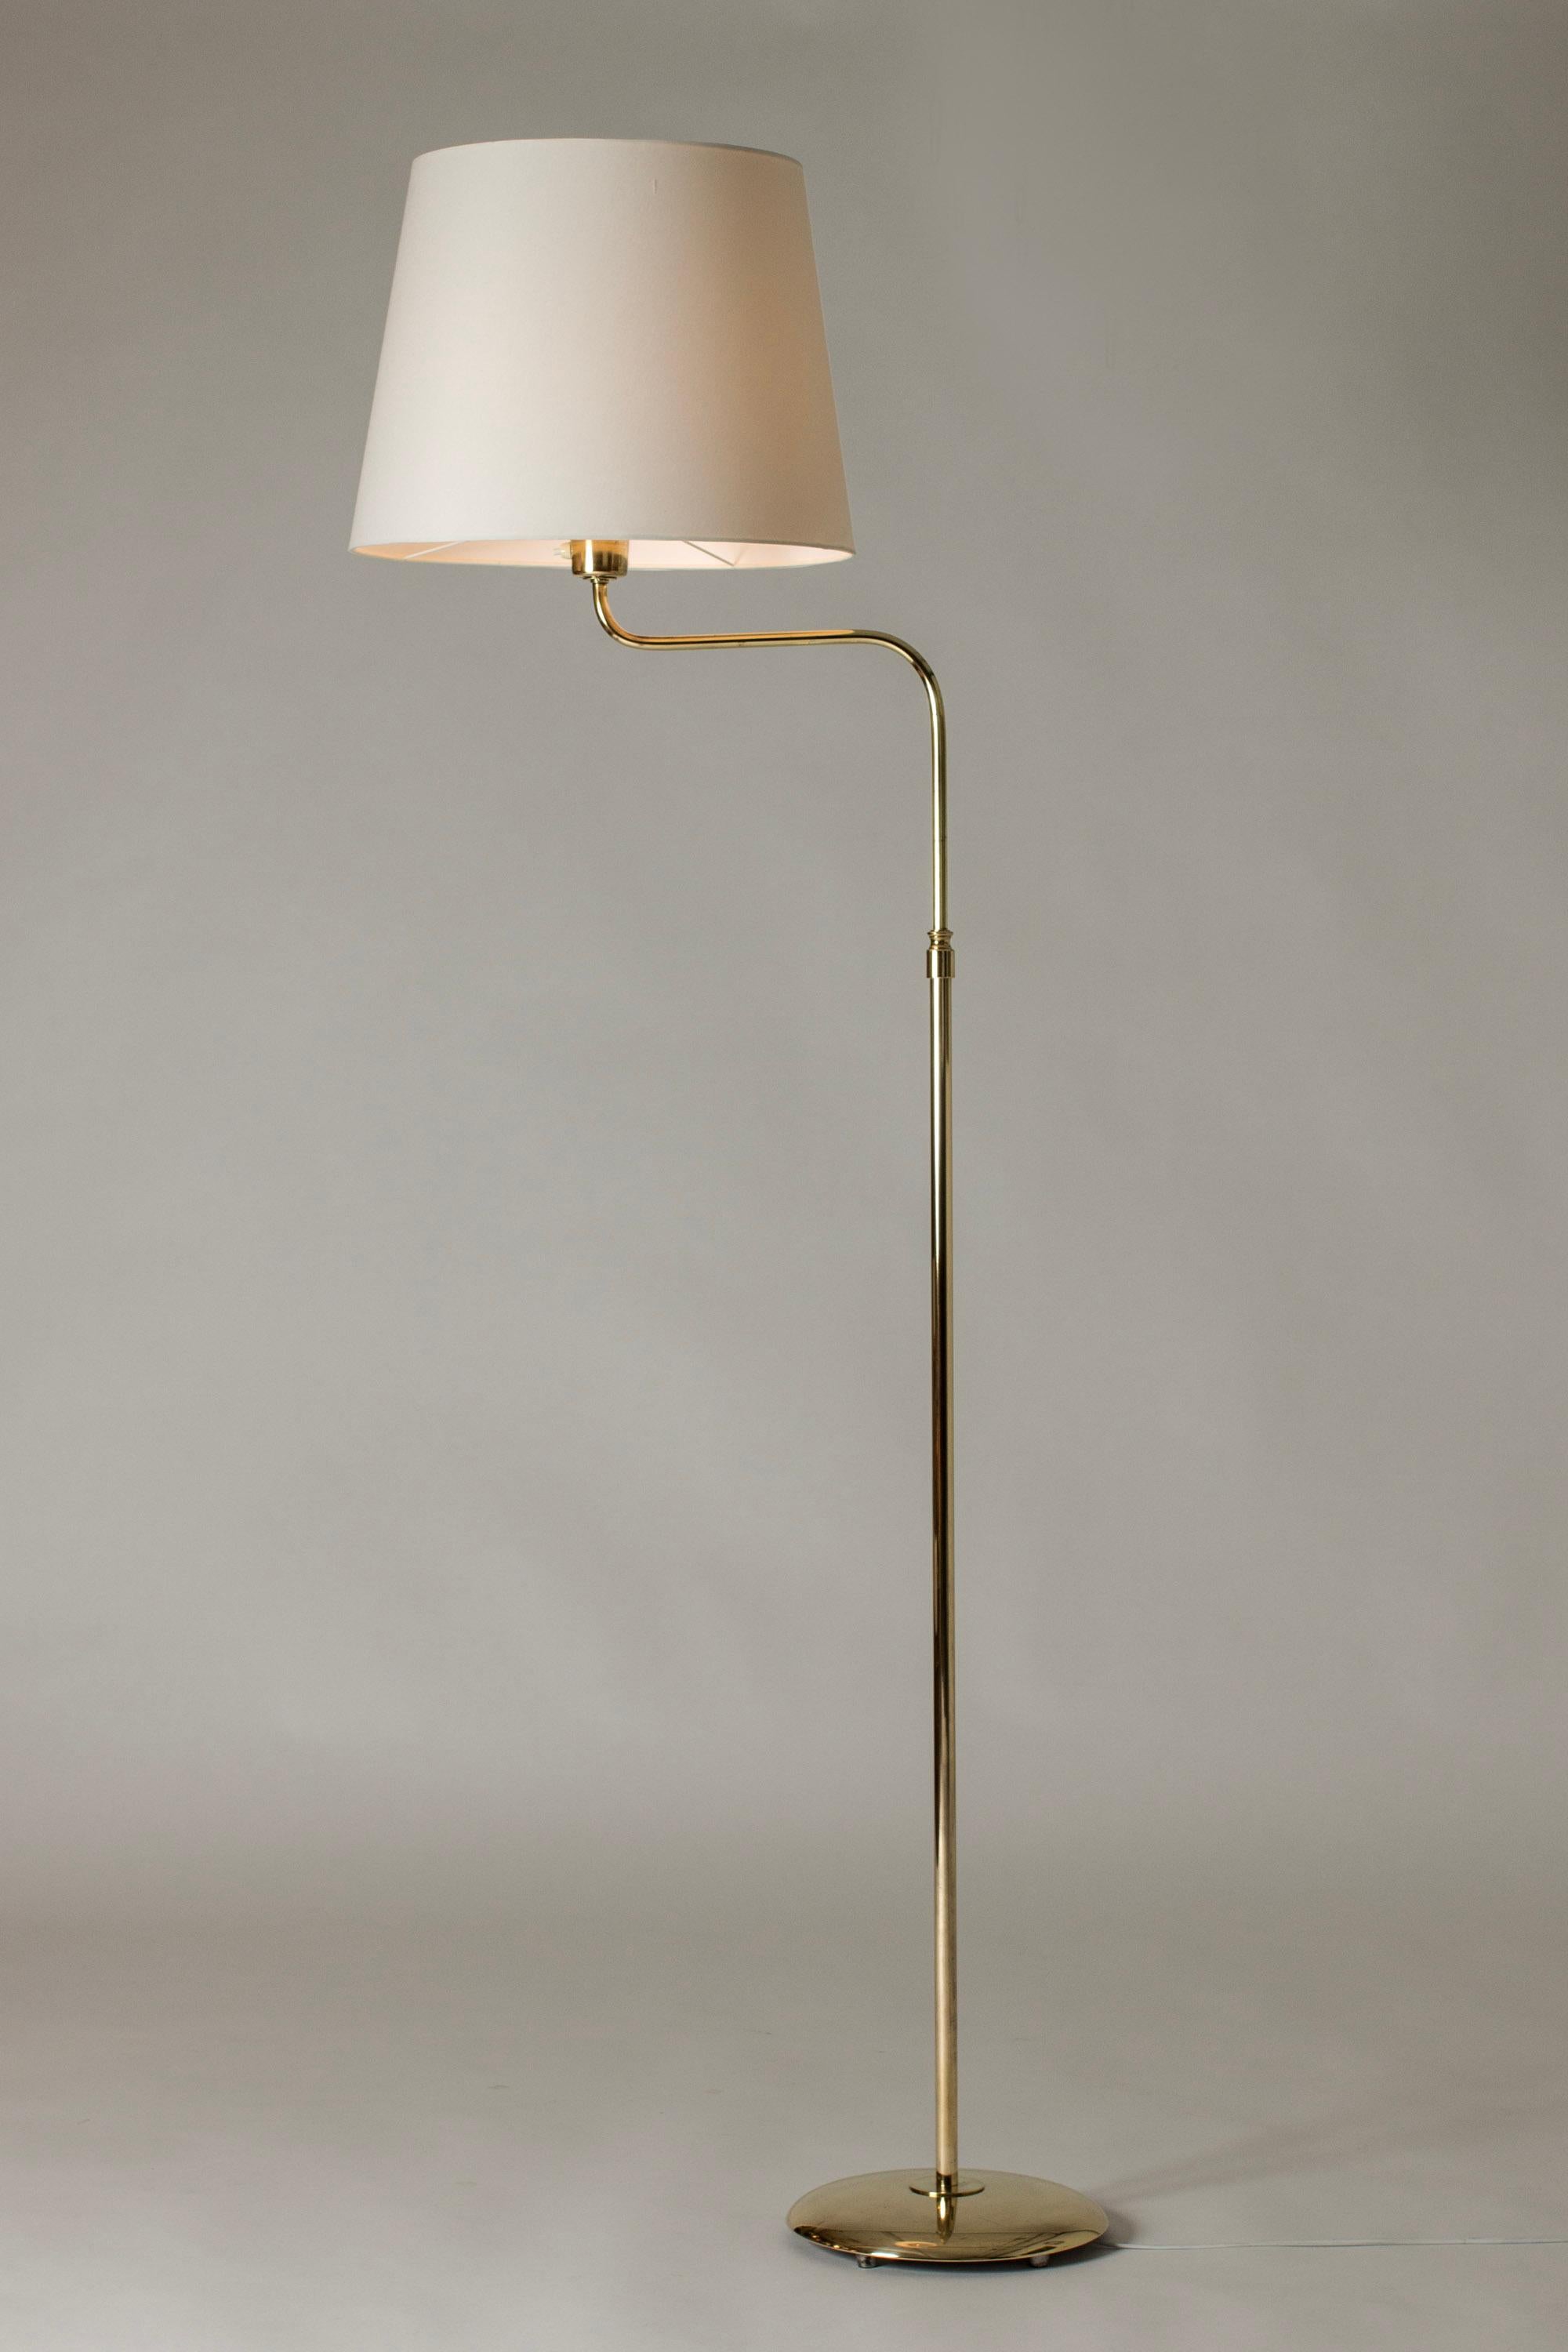 Mid-20th Century Scandinavian Midcentury Brass Floor Lamp from Nk, Sweden, 1950s For Sale